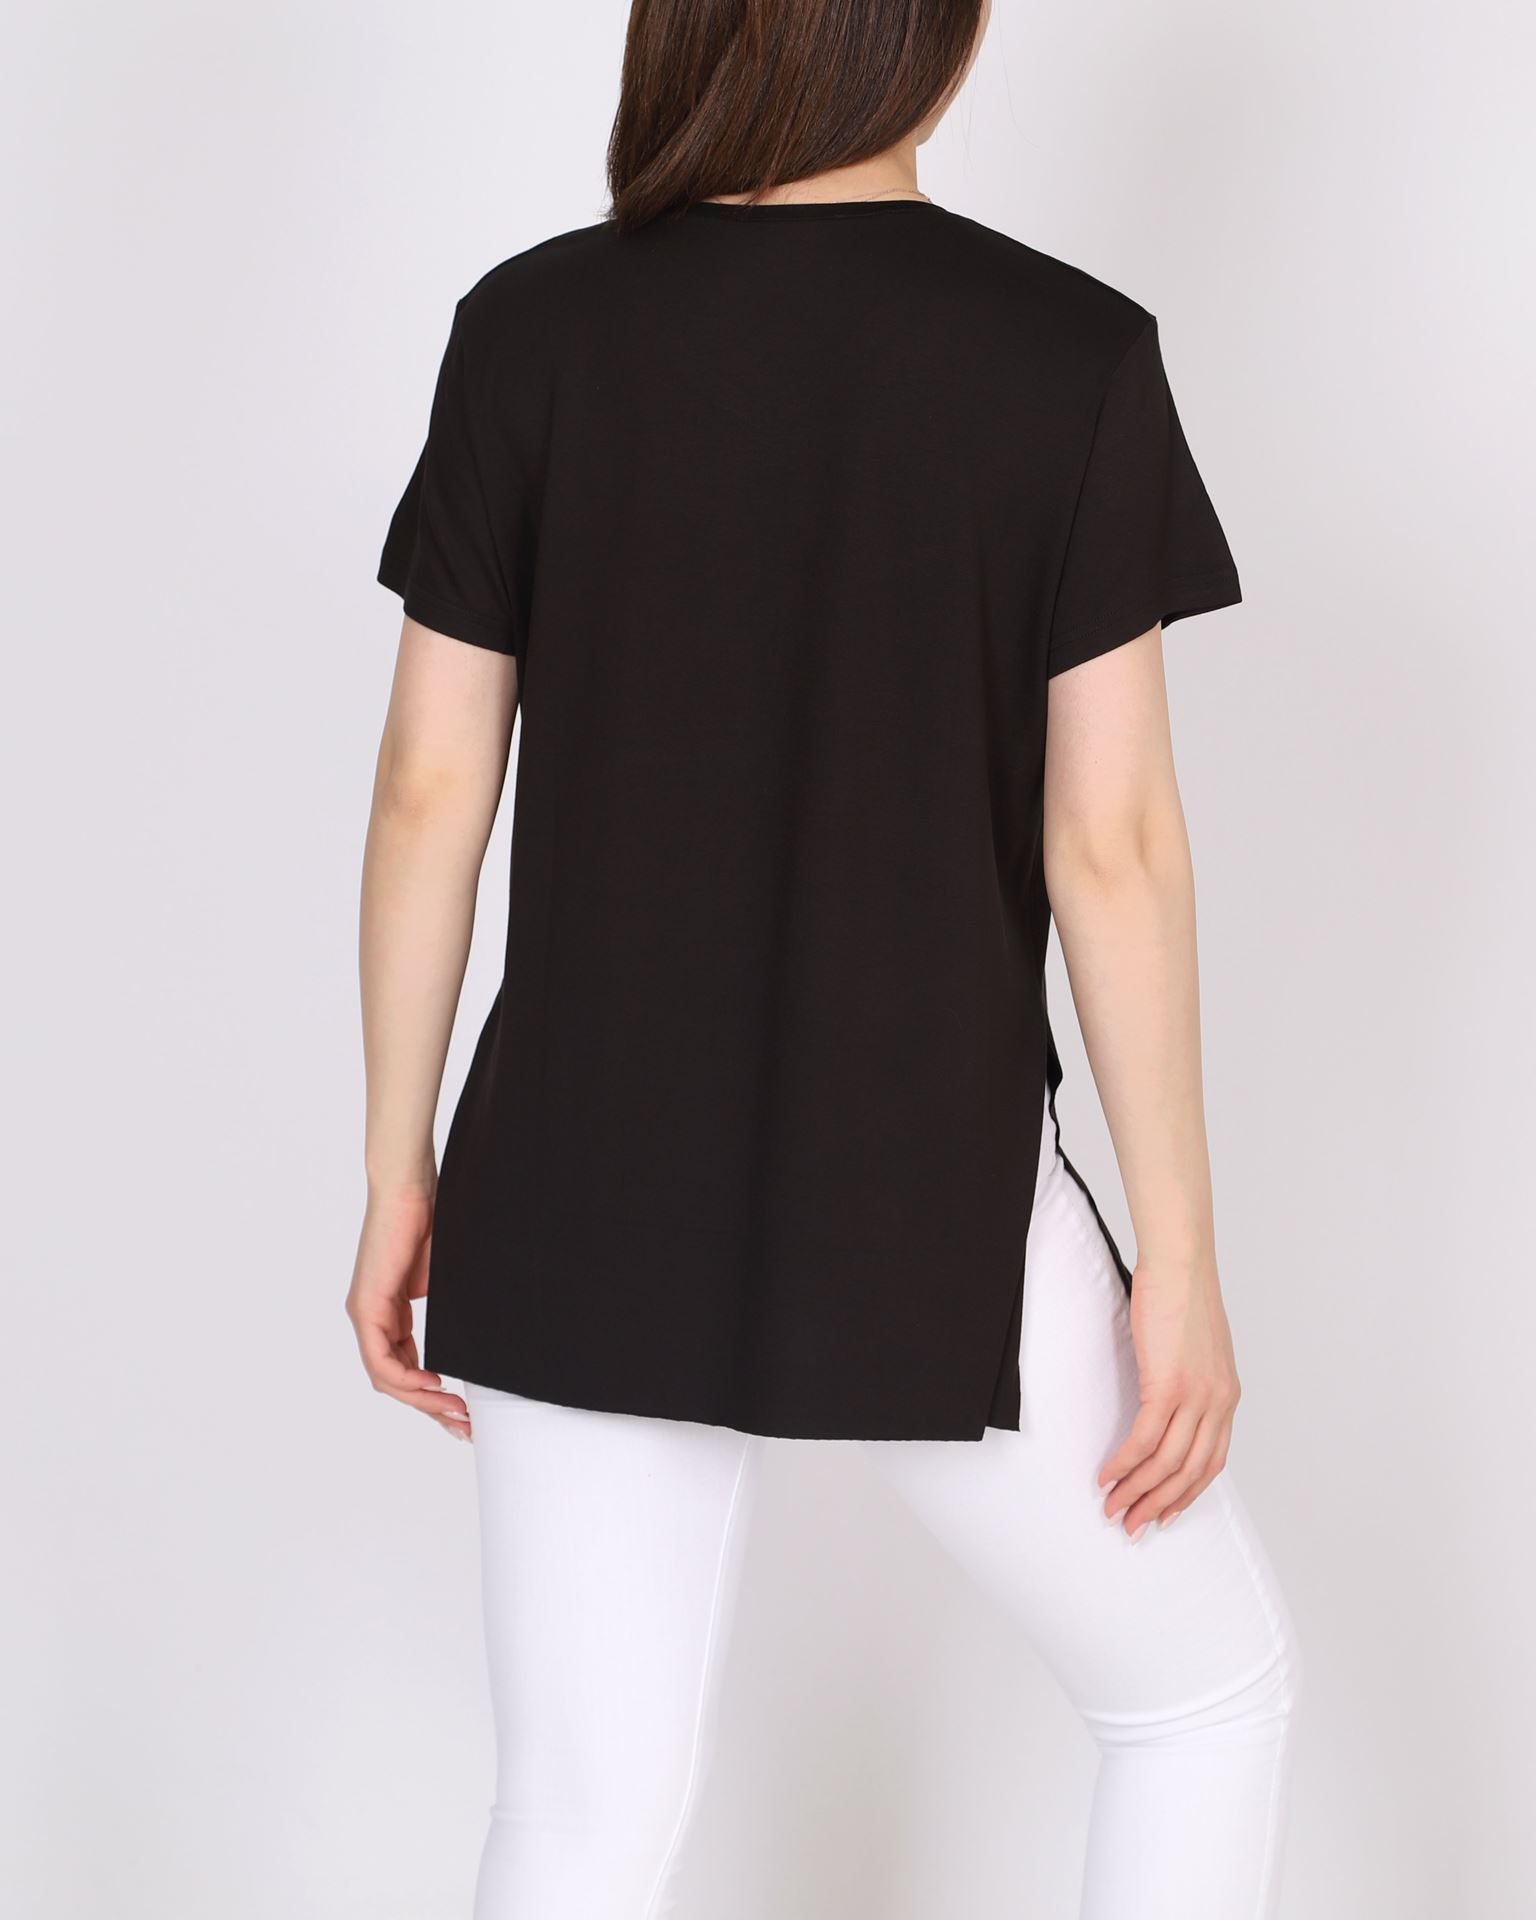 Siyah V Yaka Yırtmaçlı T-shirt TSH381